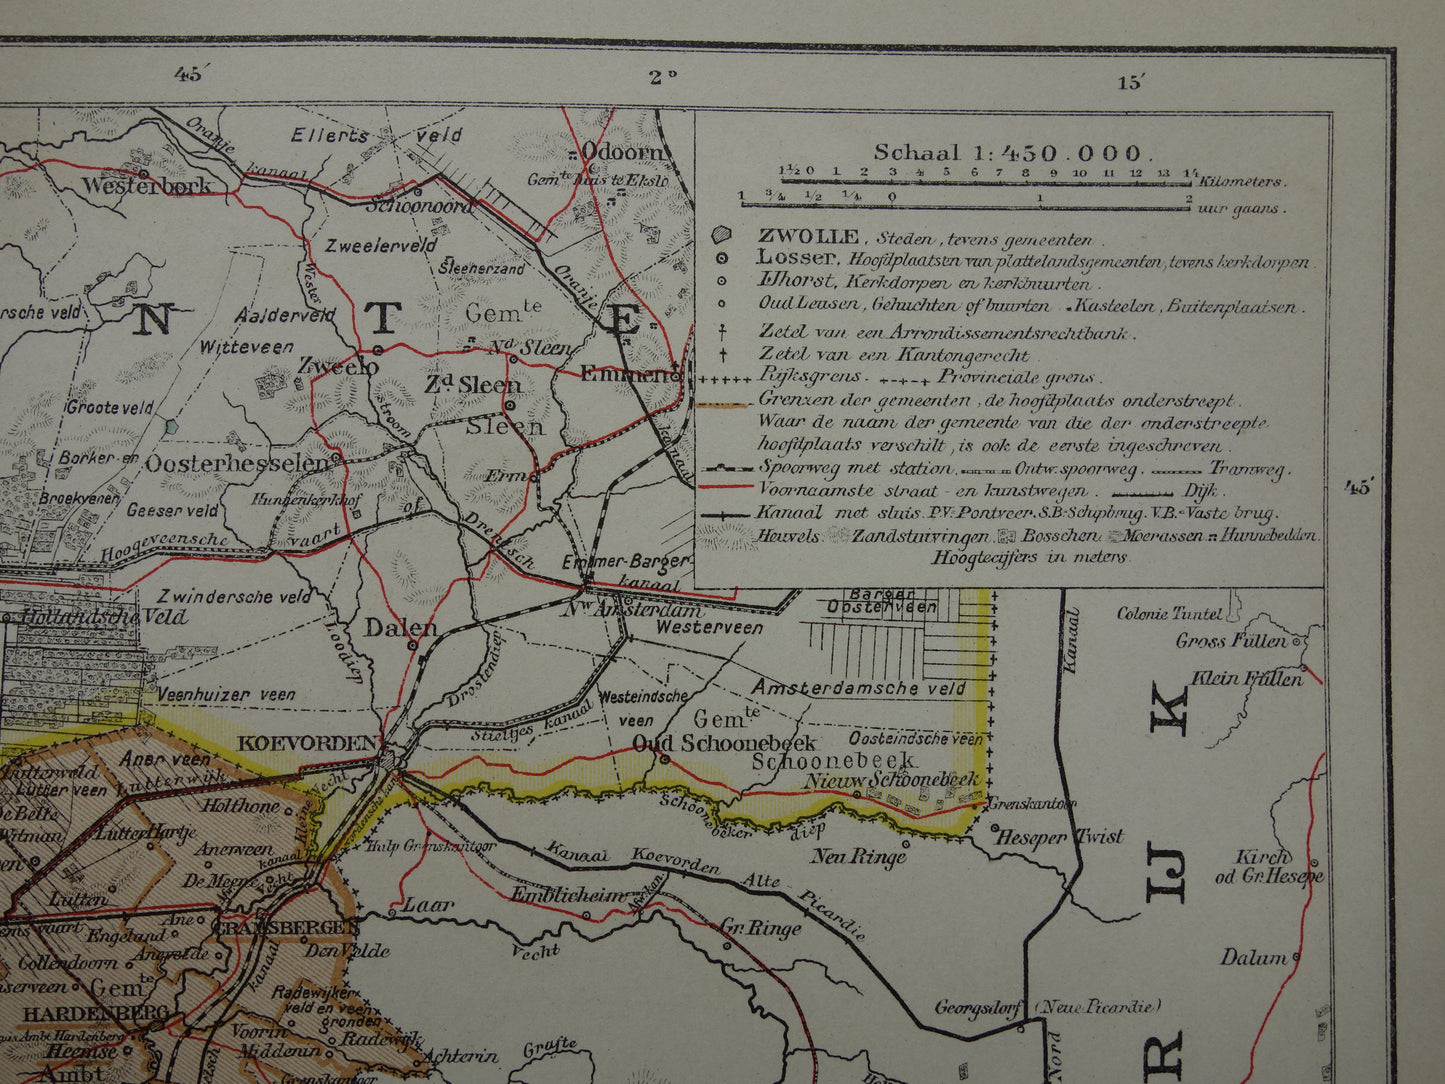 Overijssel Oude landkaart van de provincie Overijssel uit 1910 originele antieke kaart Deventer Zwolle